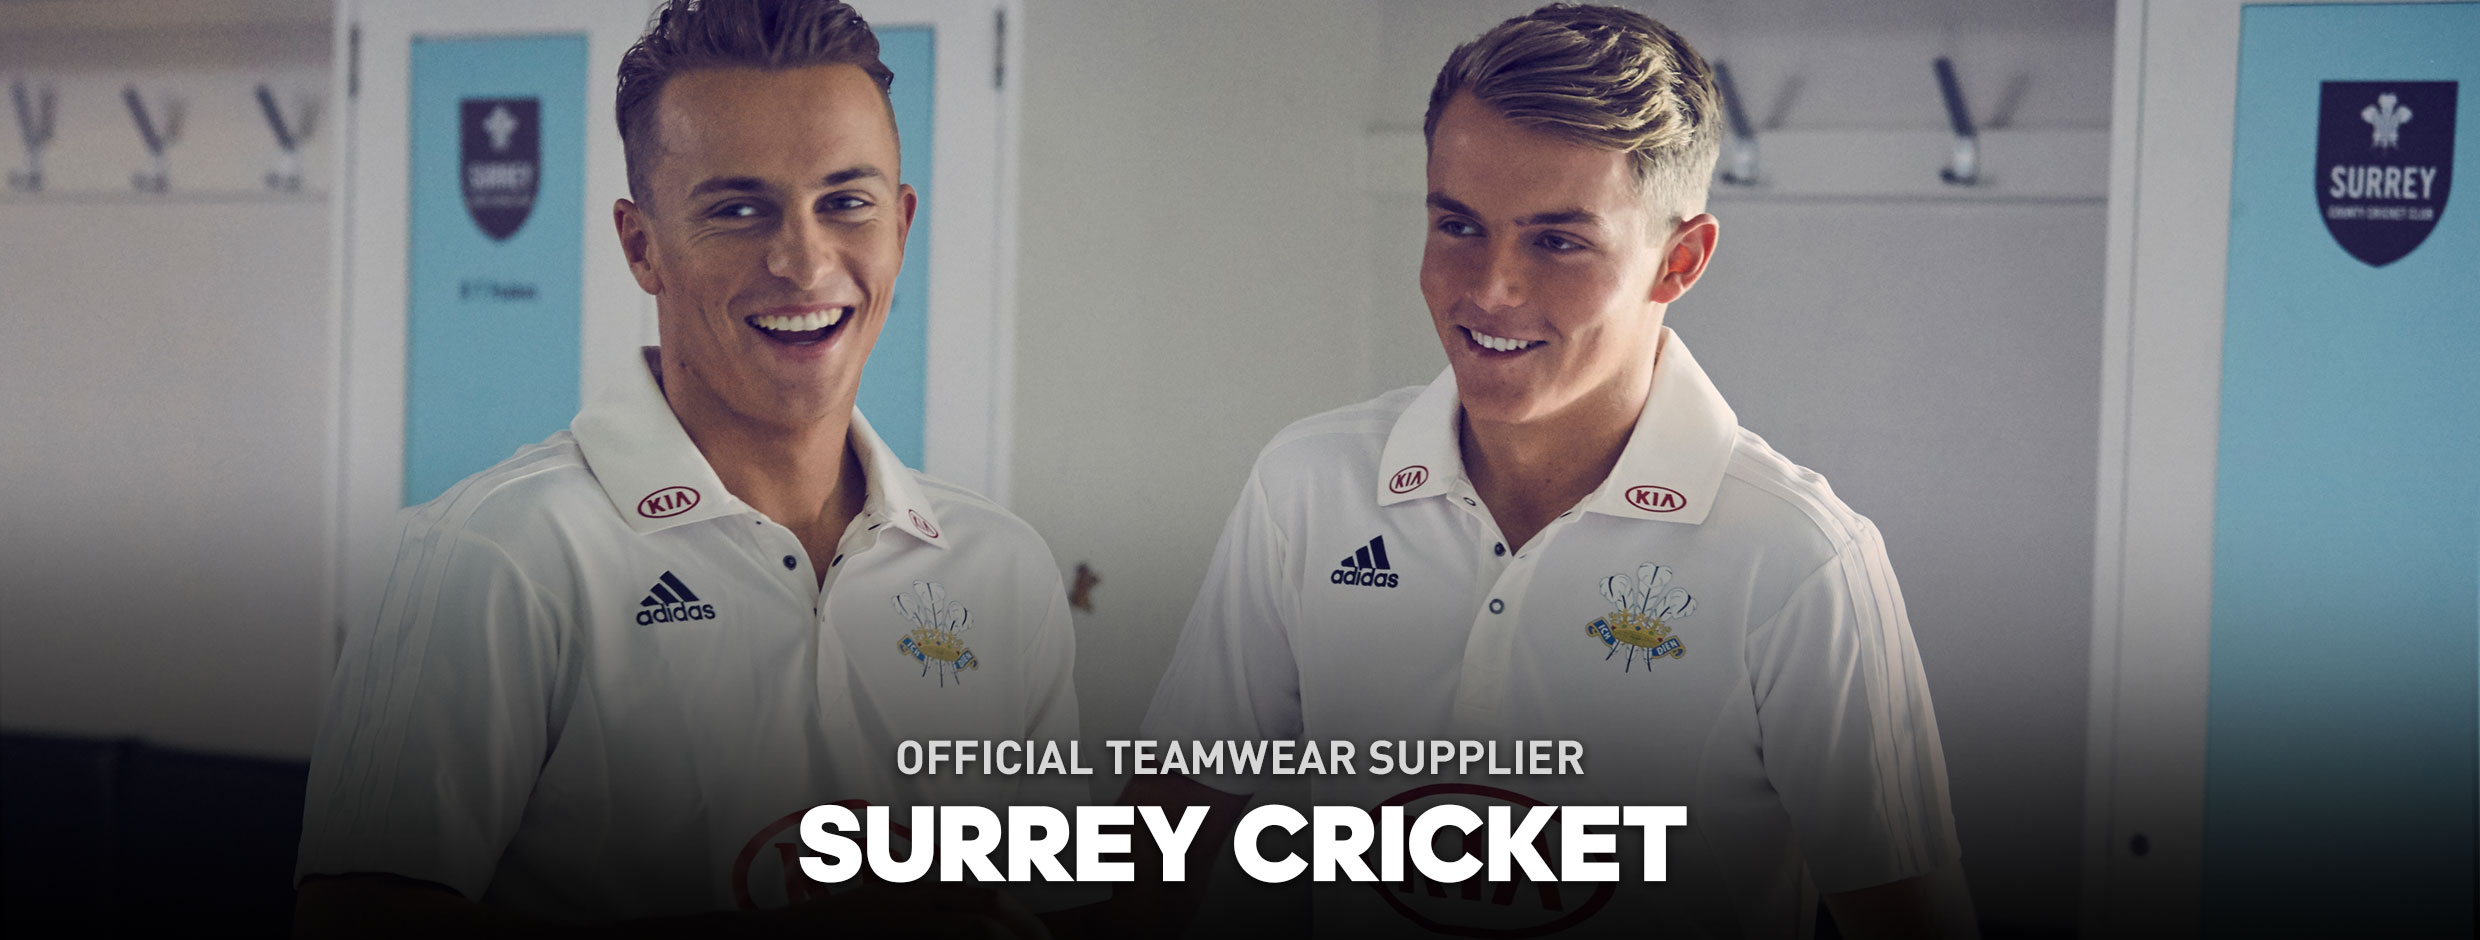 Surrey Cricket